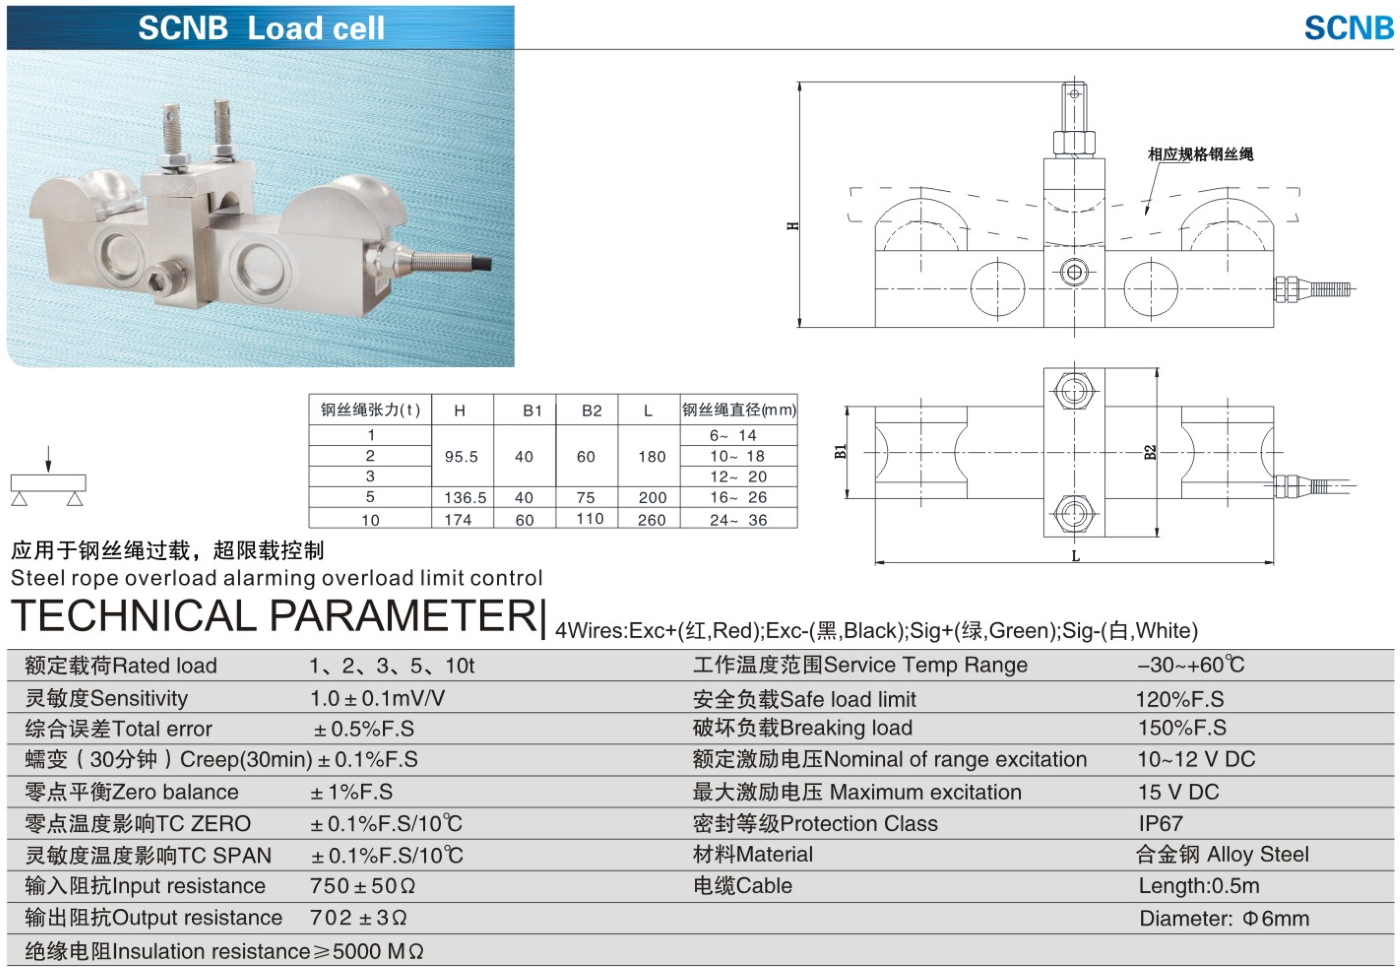 img/loadcell-images/loadpin-lateralpress-torque/KELI_SCNB_Loadpin-TTM_Teknoloji.jpg